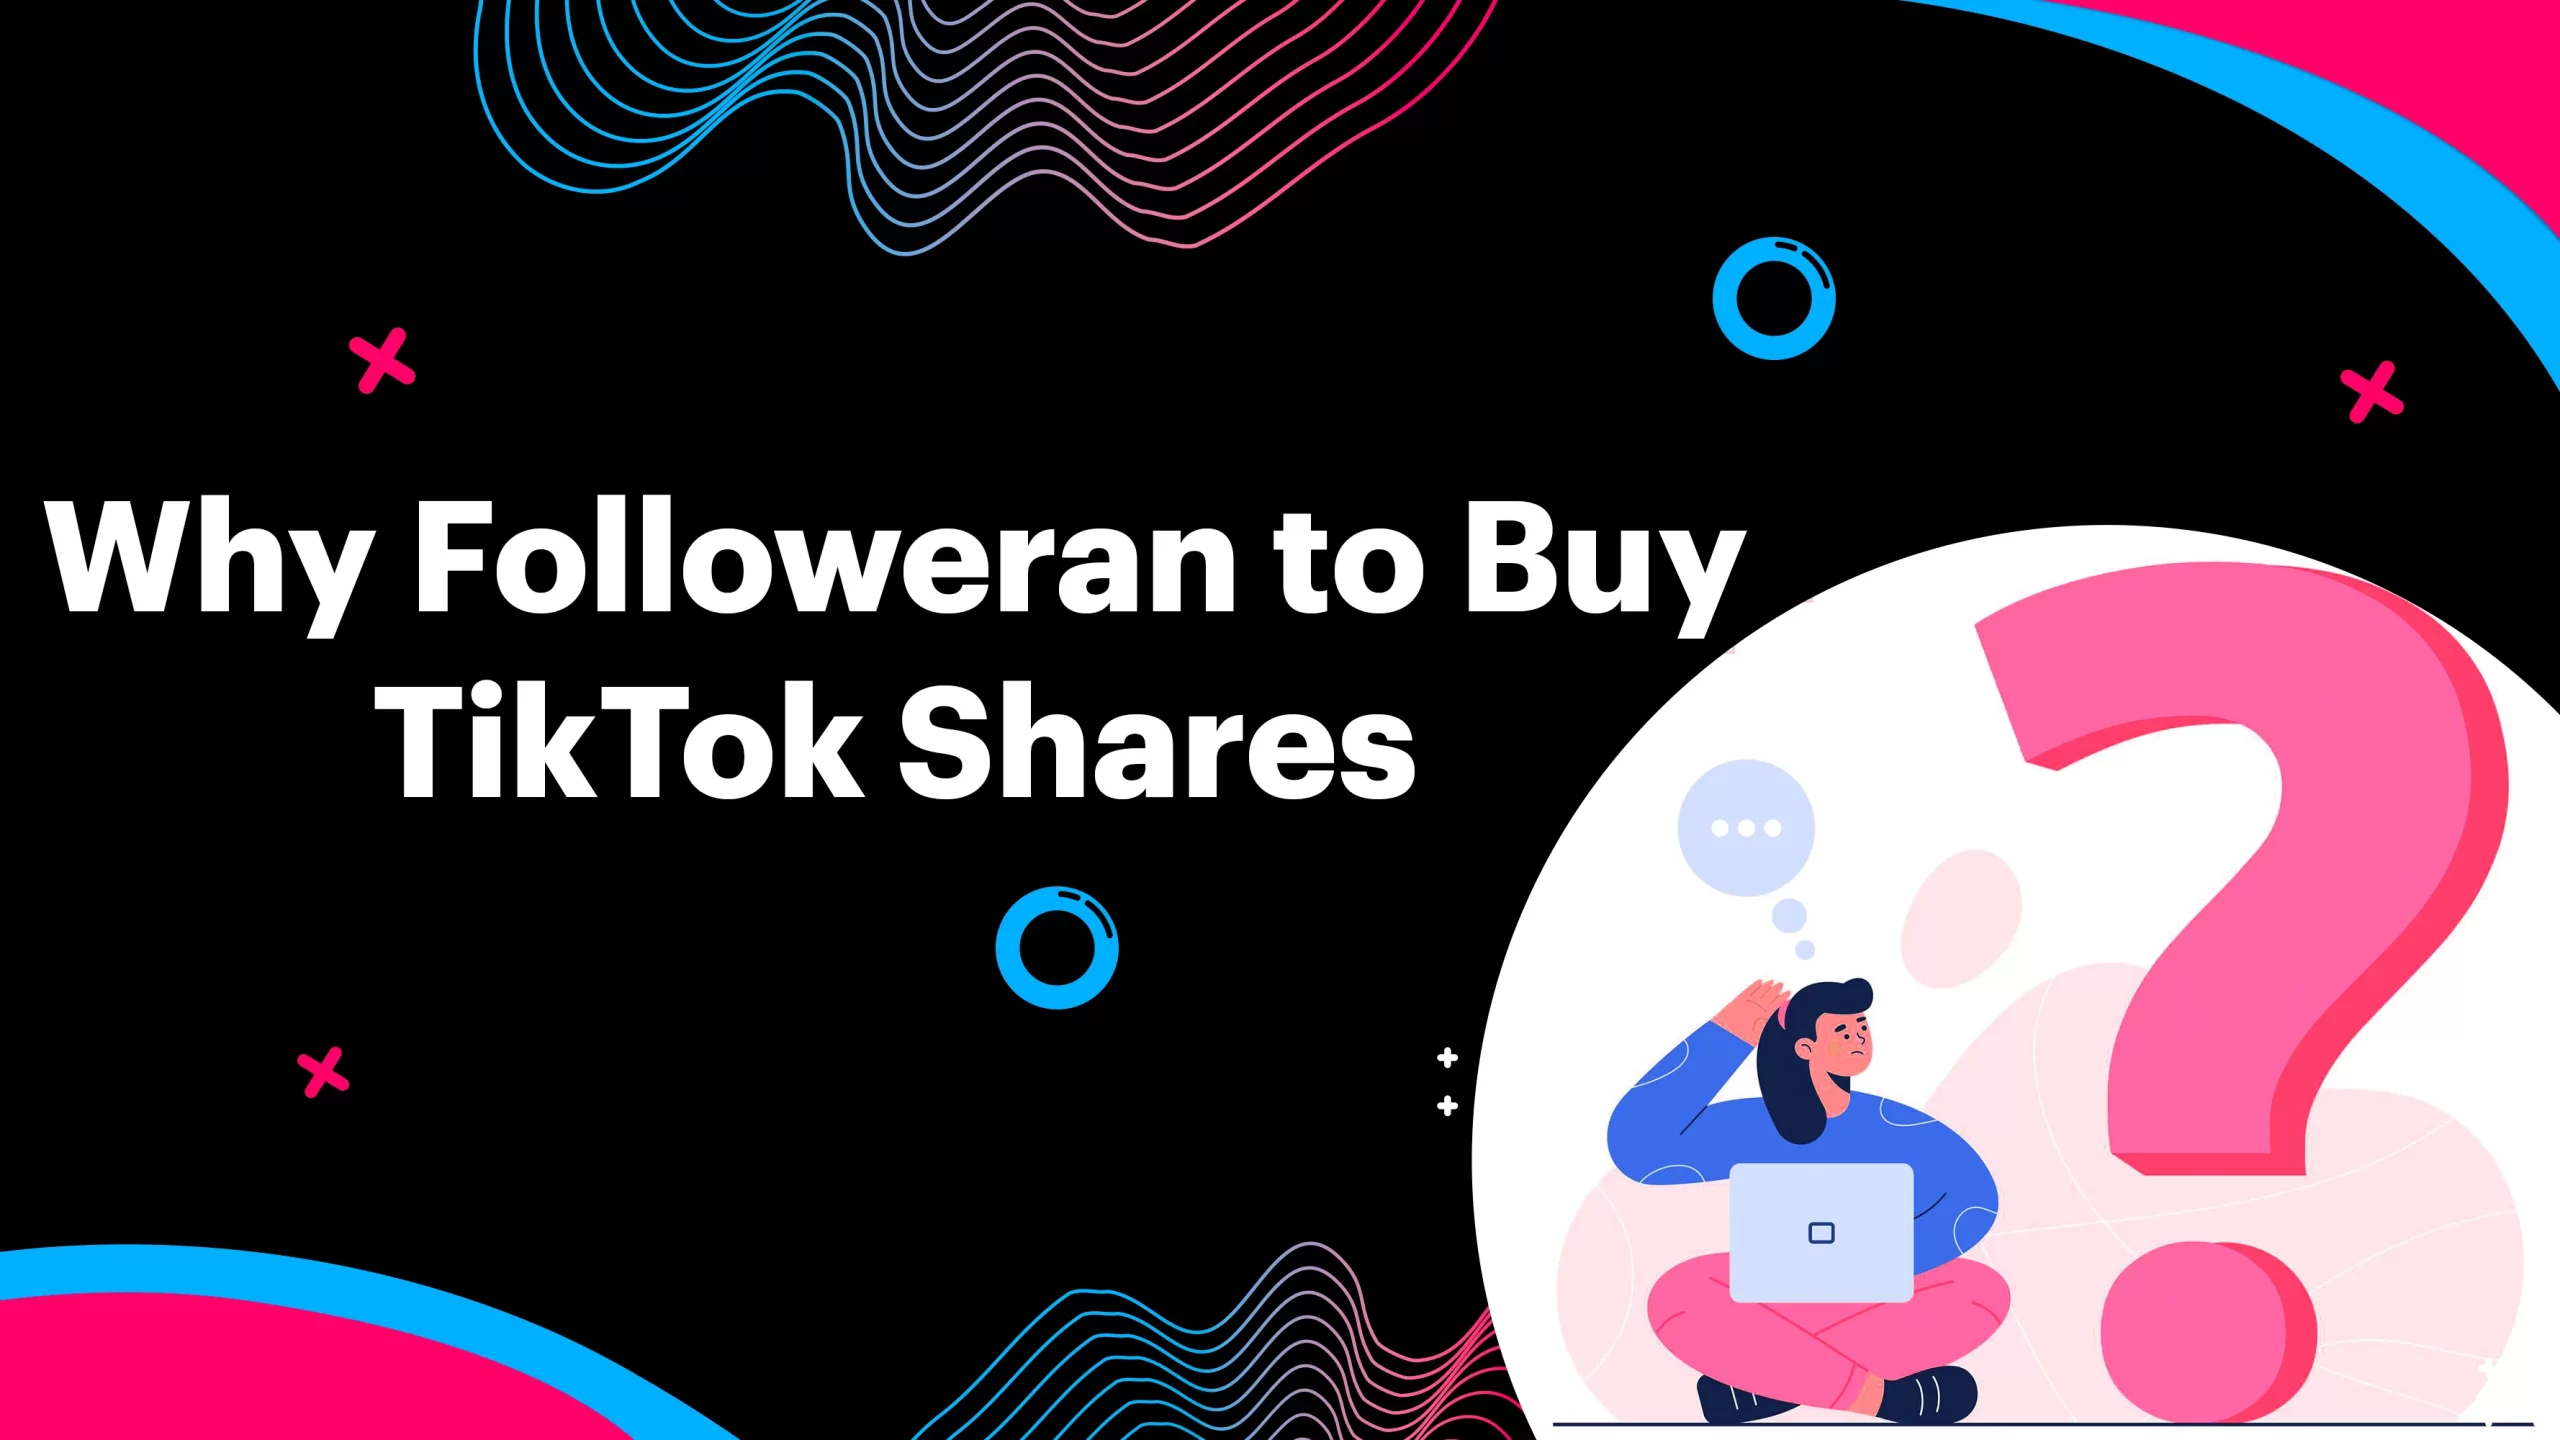 Why followeran to buy TikTok shares?